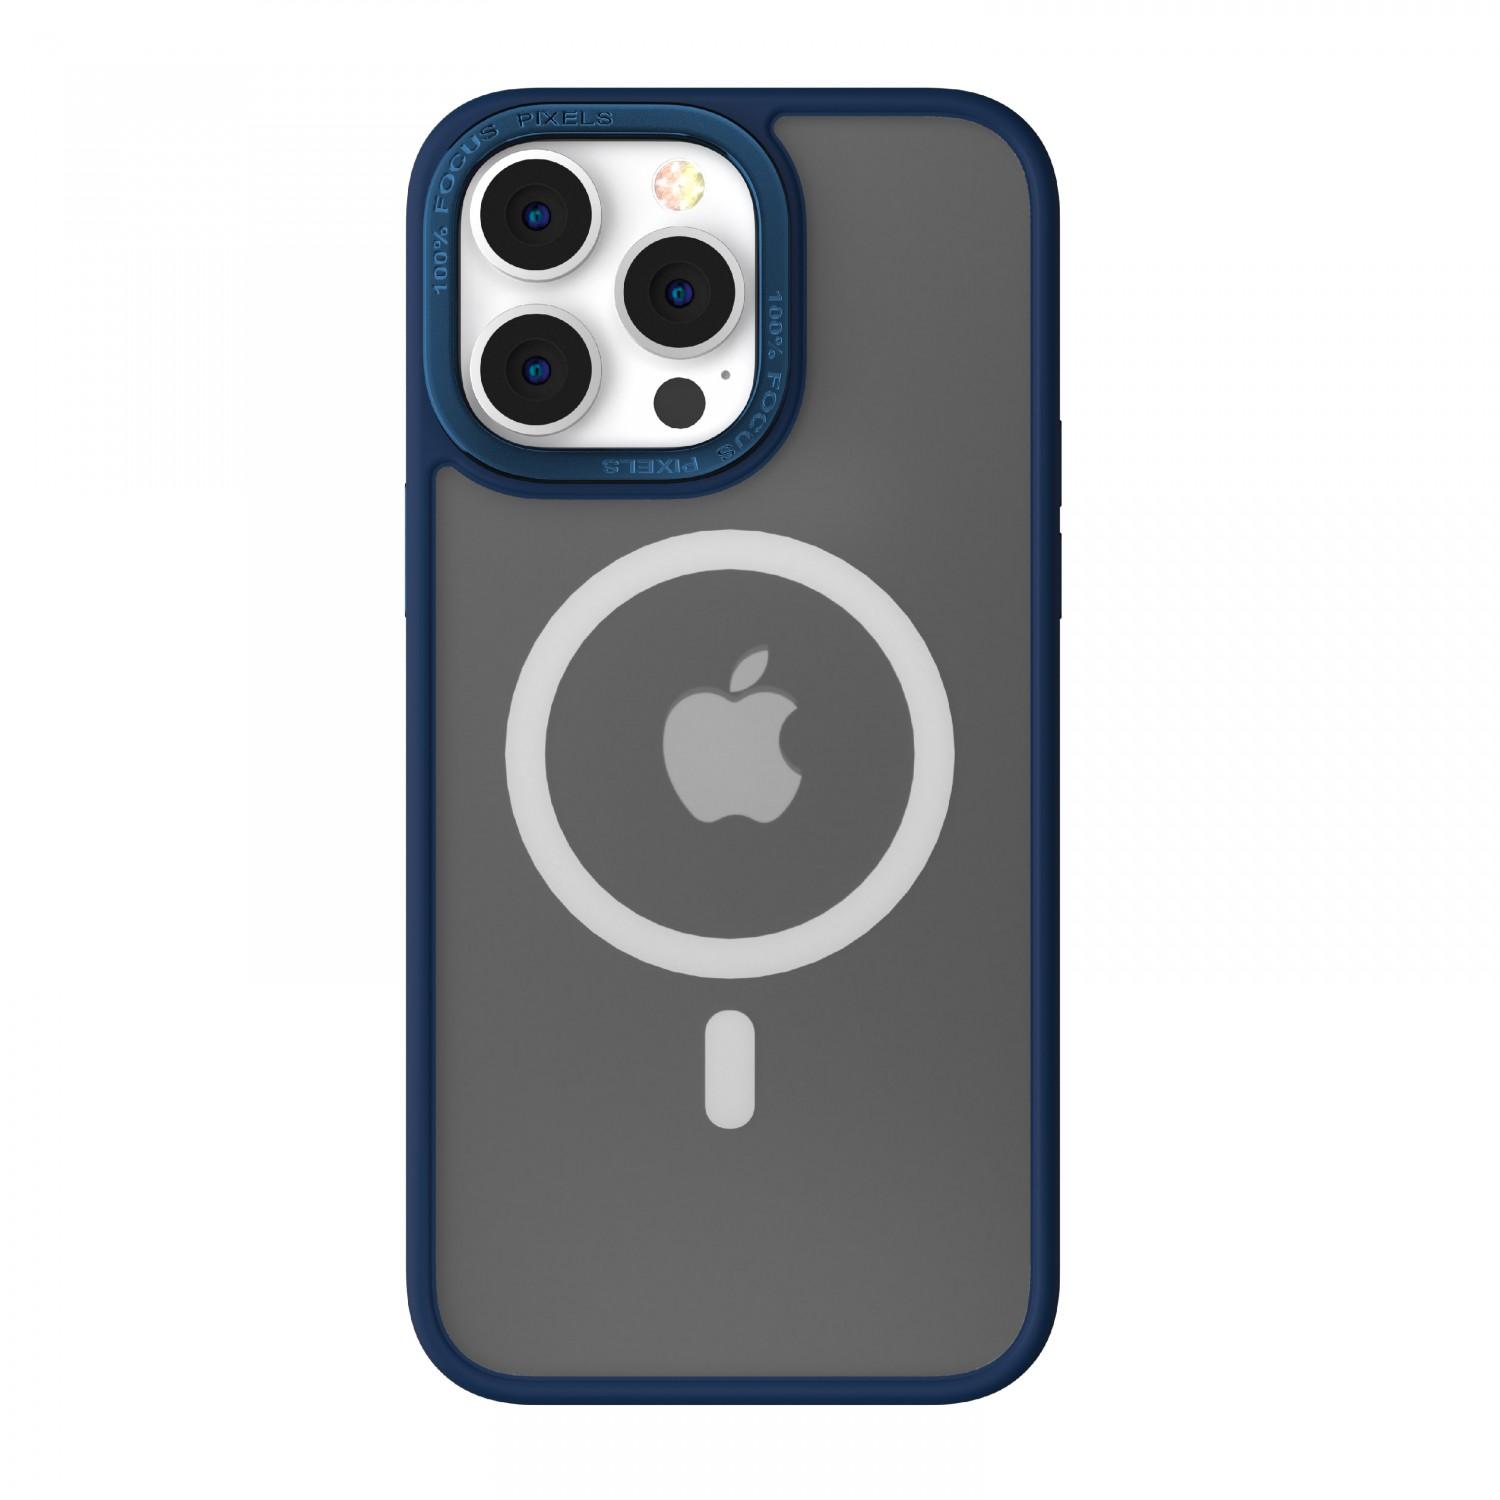 كفر جوال ايفون 14 برو ماج سيف معدني ازرق من كوما Comma Joy Elegant Metal Magnet Anti Shock Case for iPhone 14 Pro ( 6.1" ) Sierra Blue